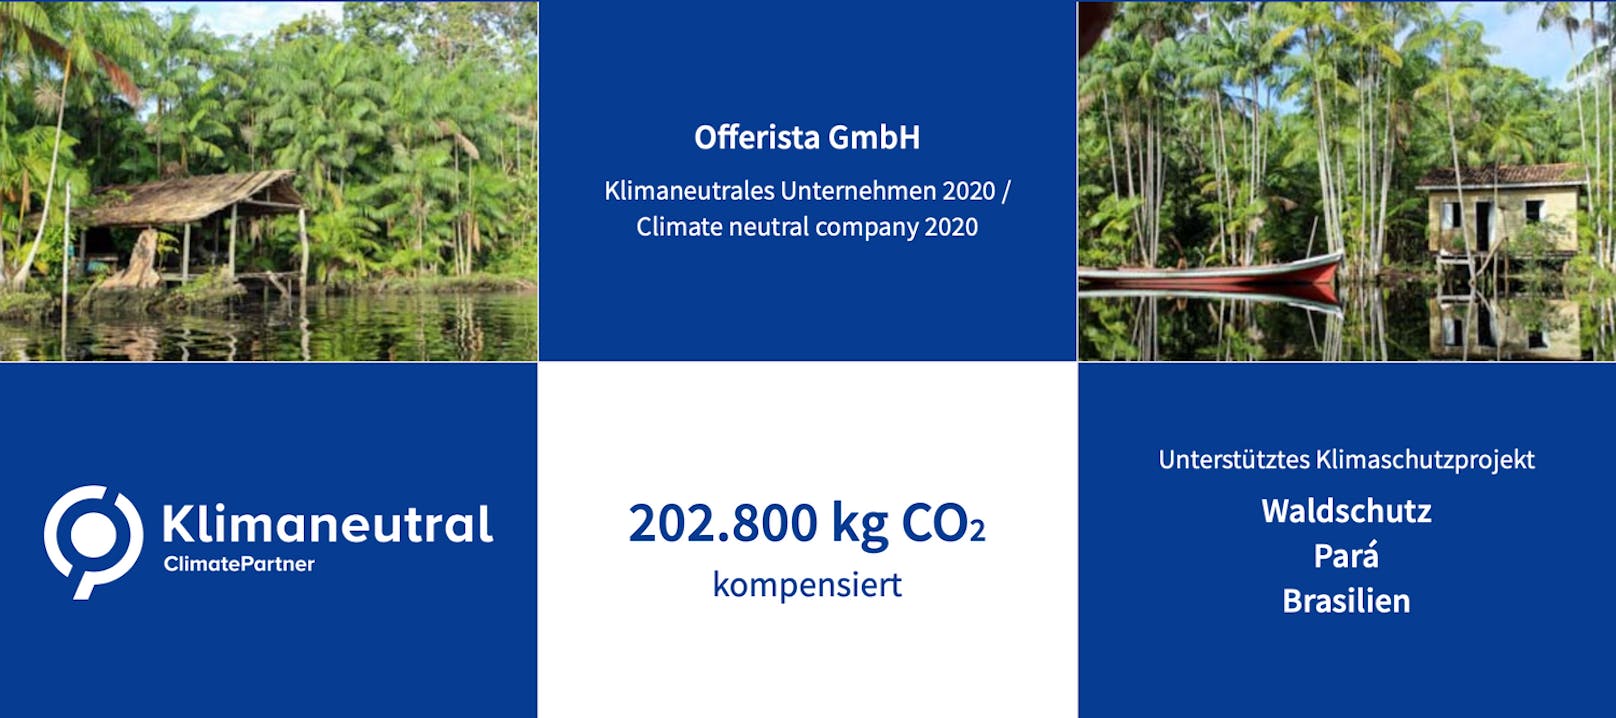 Im Zeichen der Nachhaltigkeit: Offerista Group wurde 2020 klimaneutral.